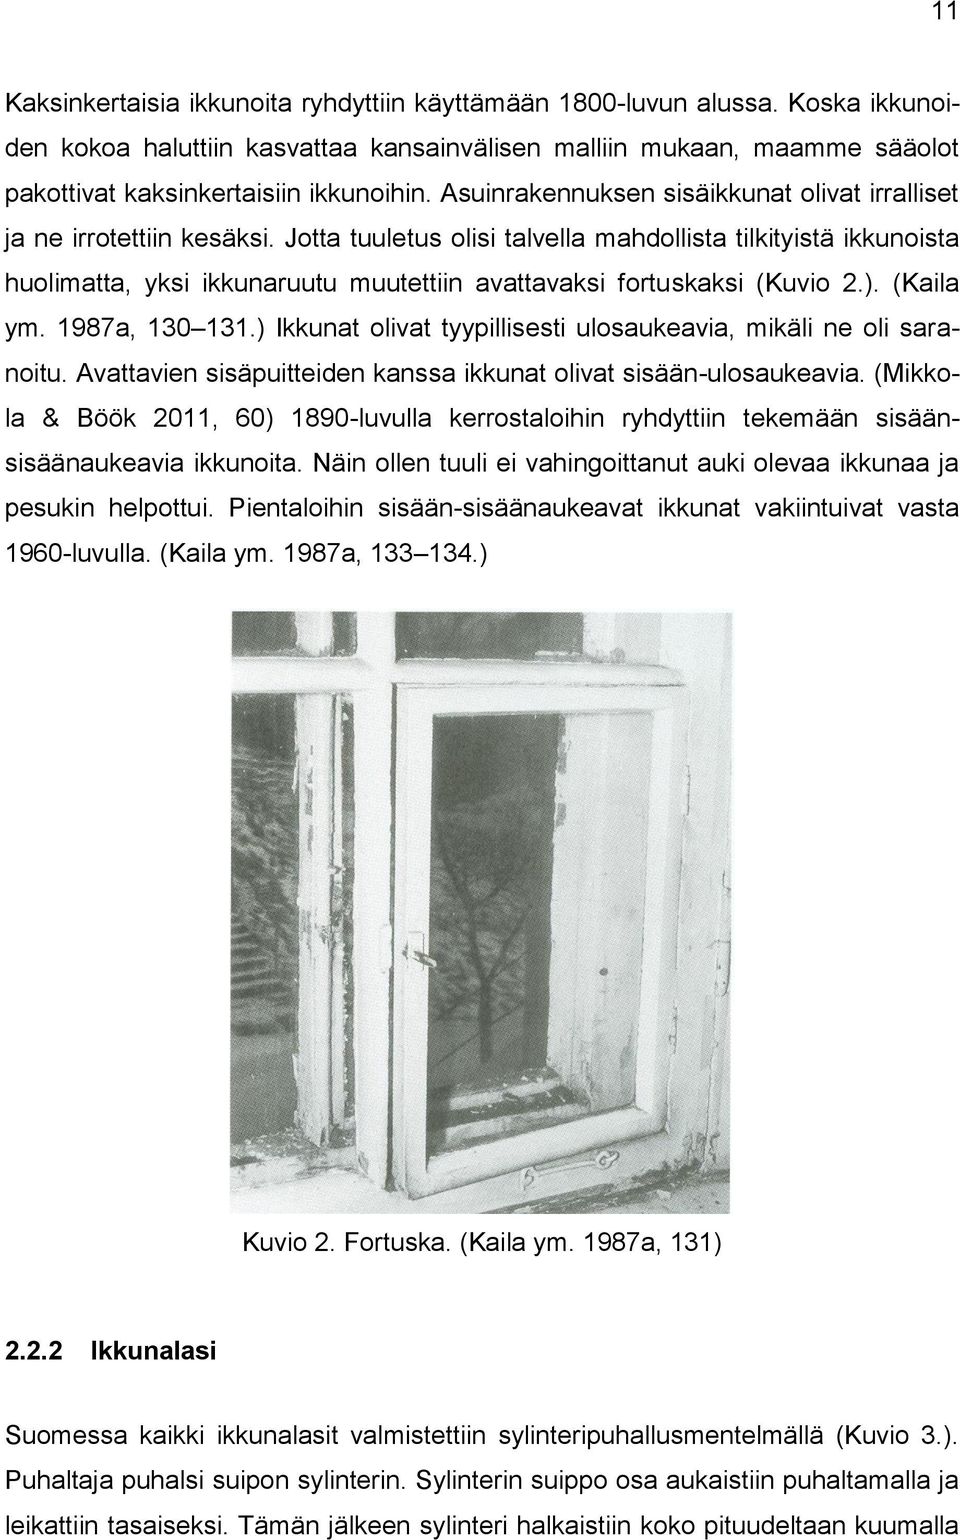 Jotta tuuletus olisi talvella mahdollista tilkityistä ikkunoista huolimatta, yksi ikkunaruutu muutettiin avattavaksi fortuskaksi (Kuvio 2.). (Kaila ym. 1987a, 130 131.